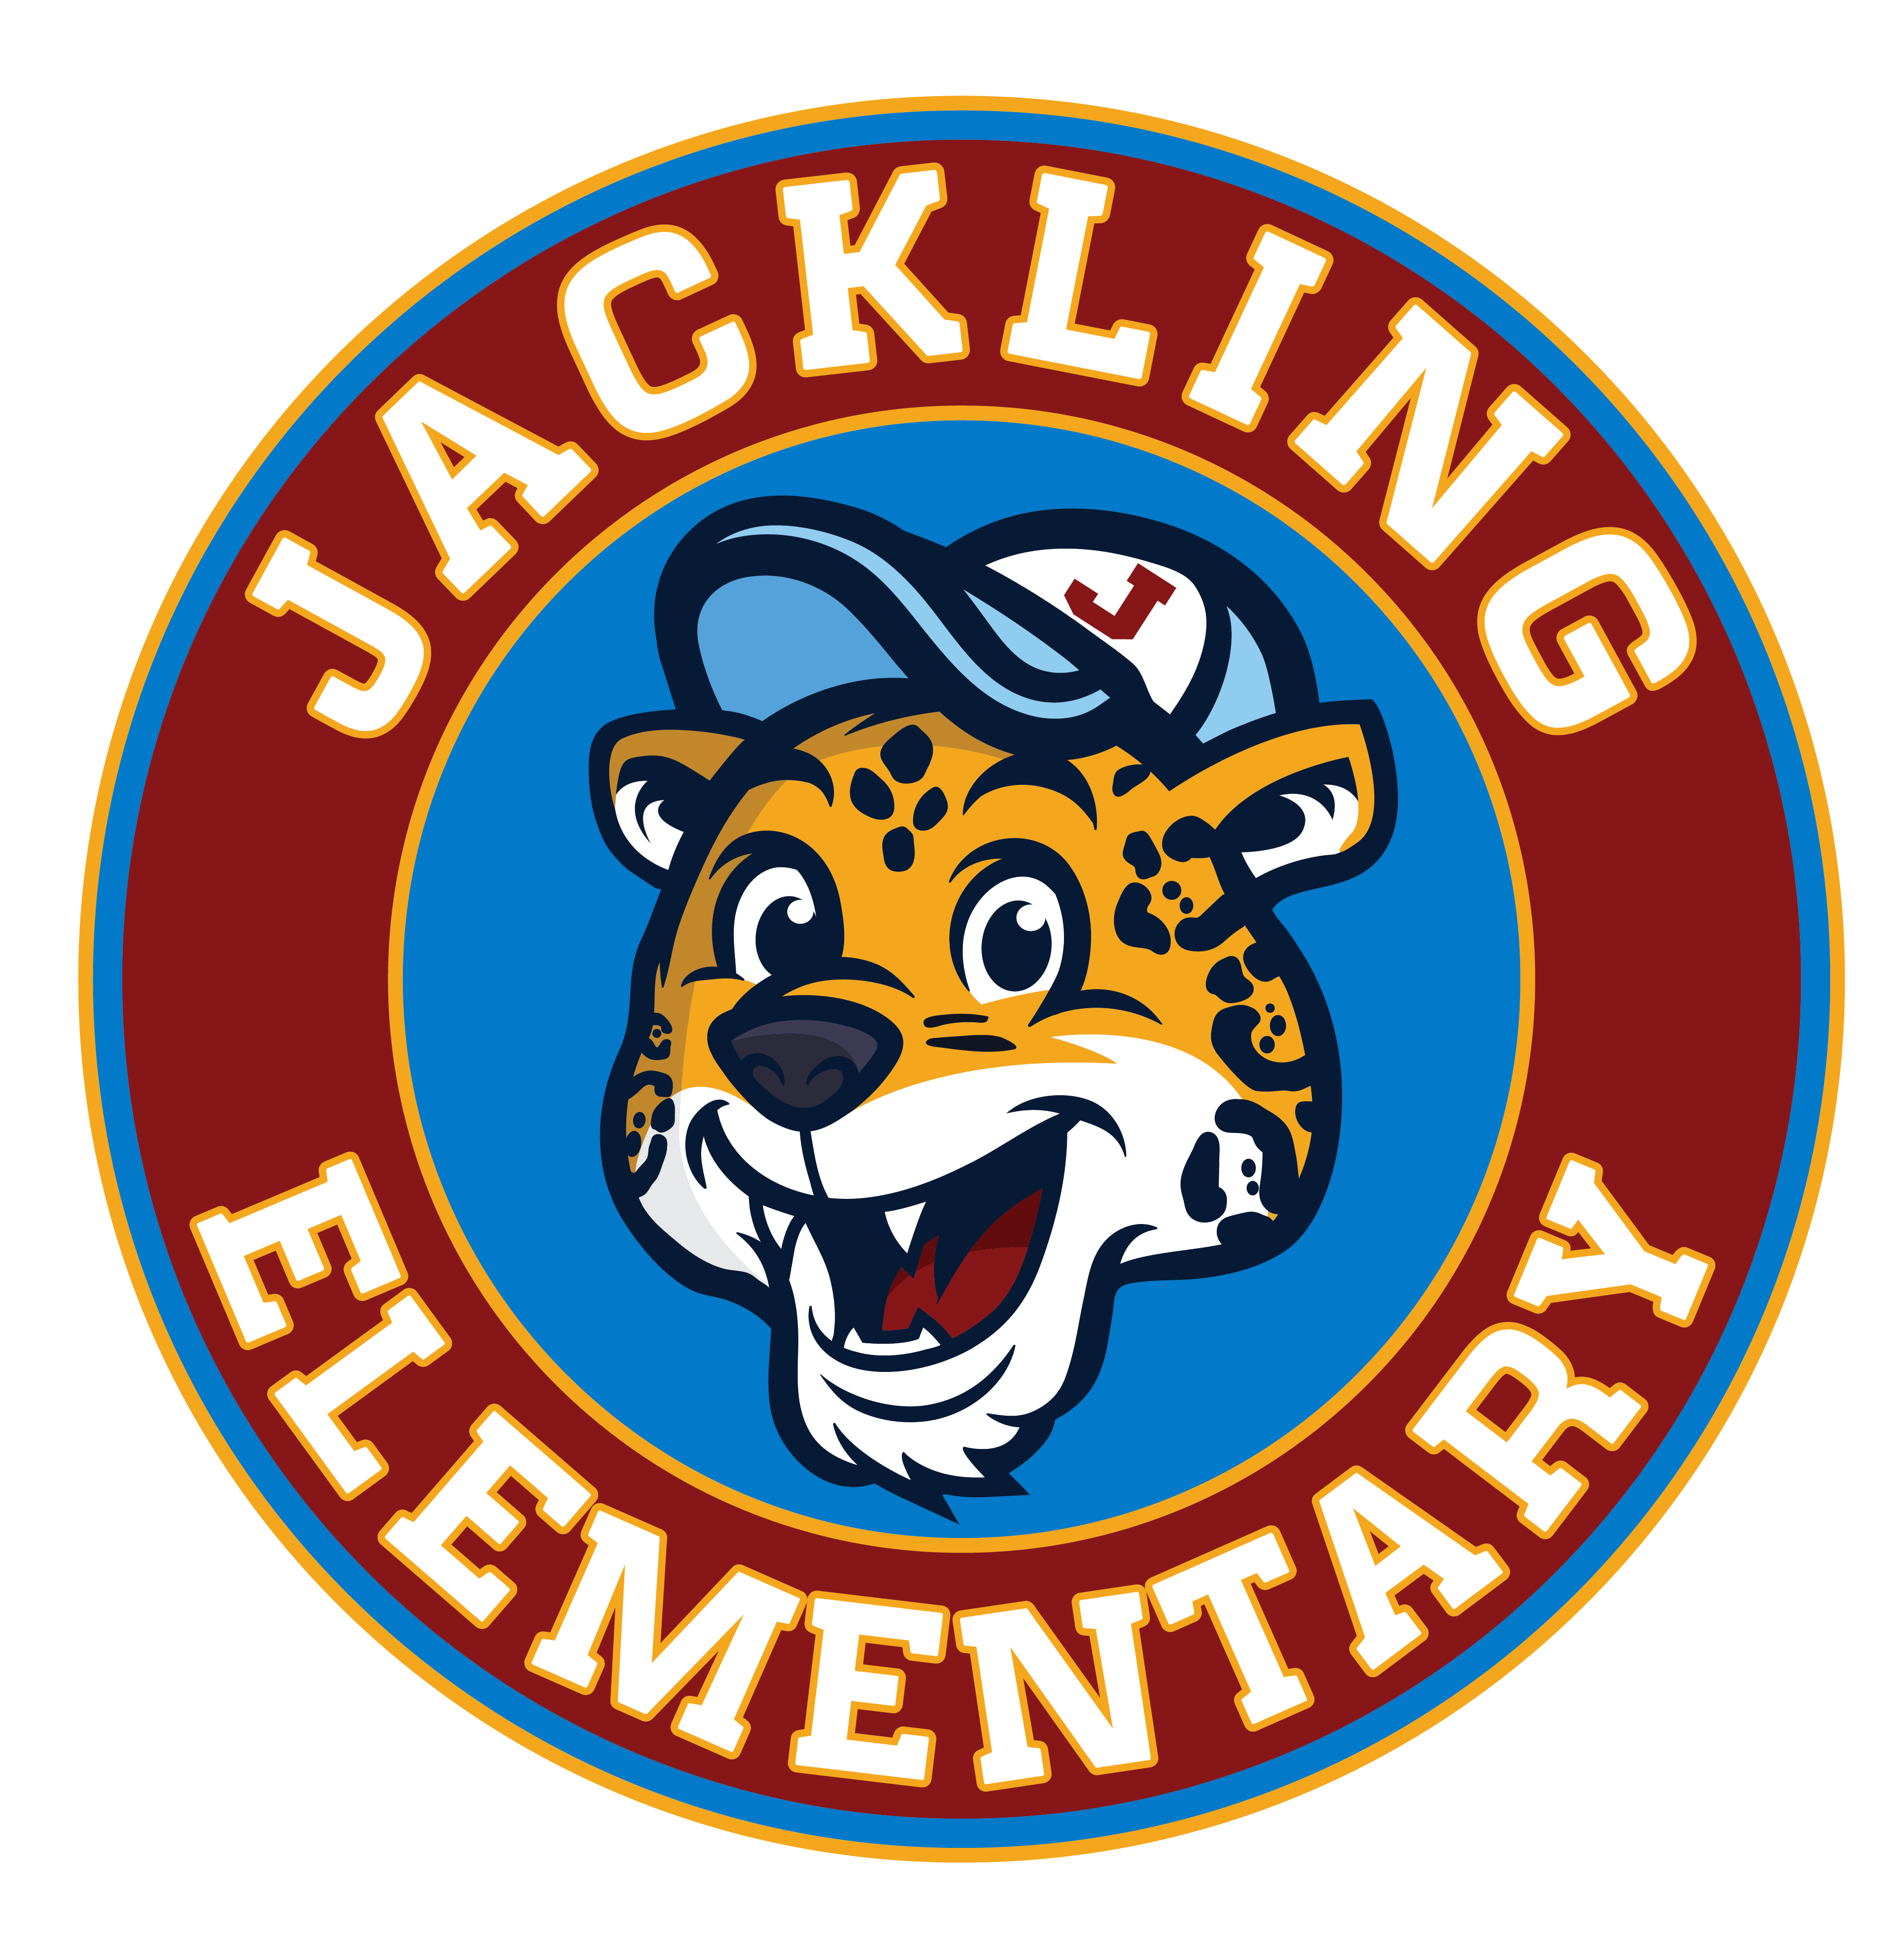 Jackling Elementary